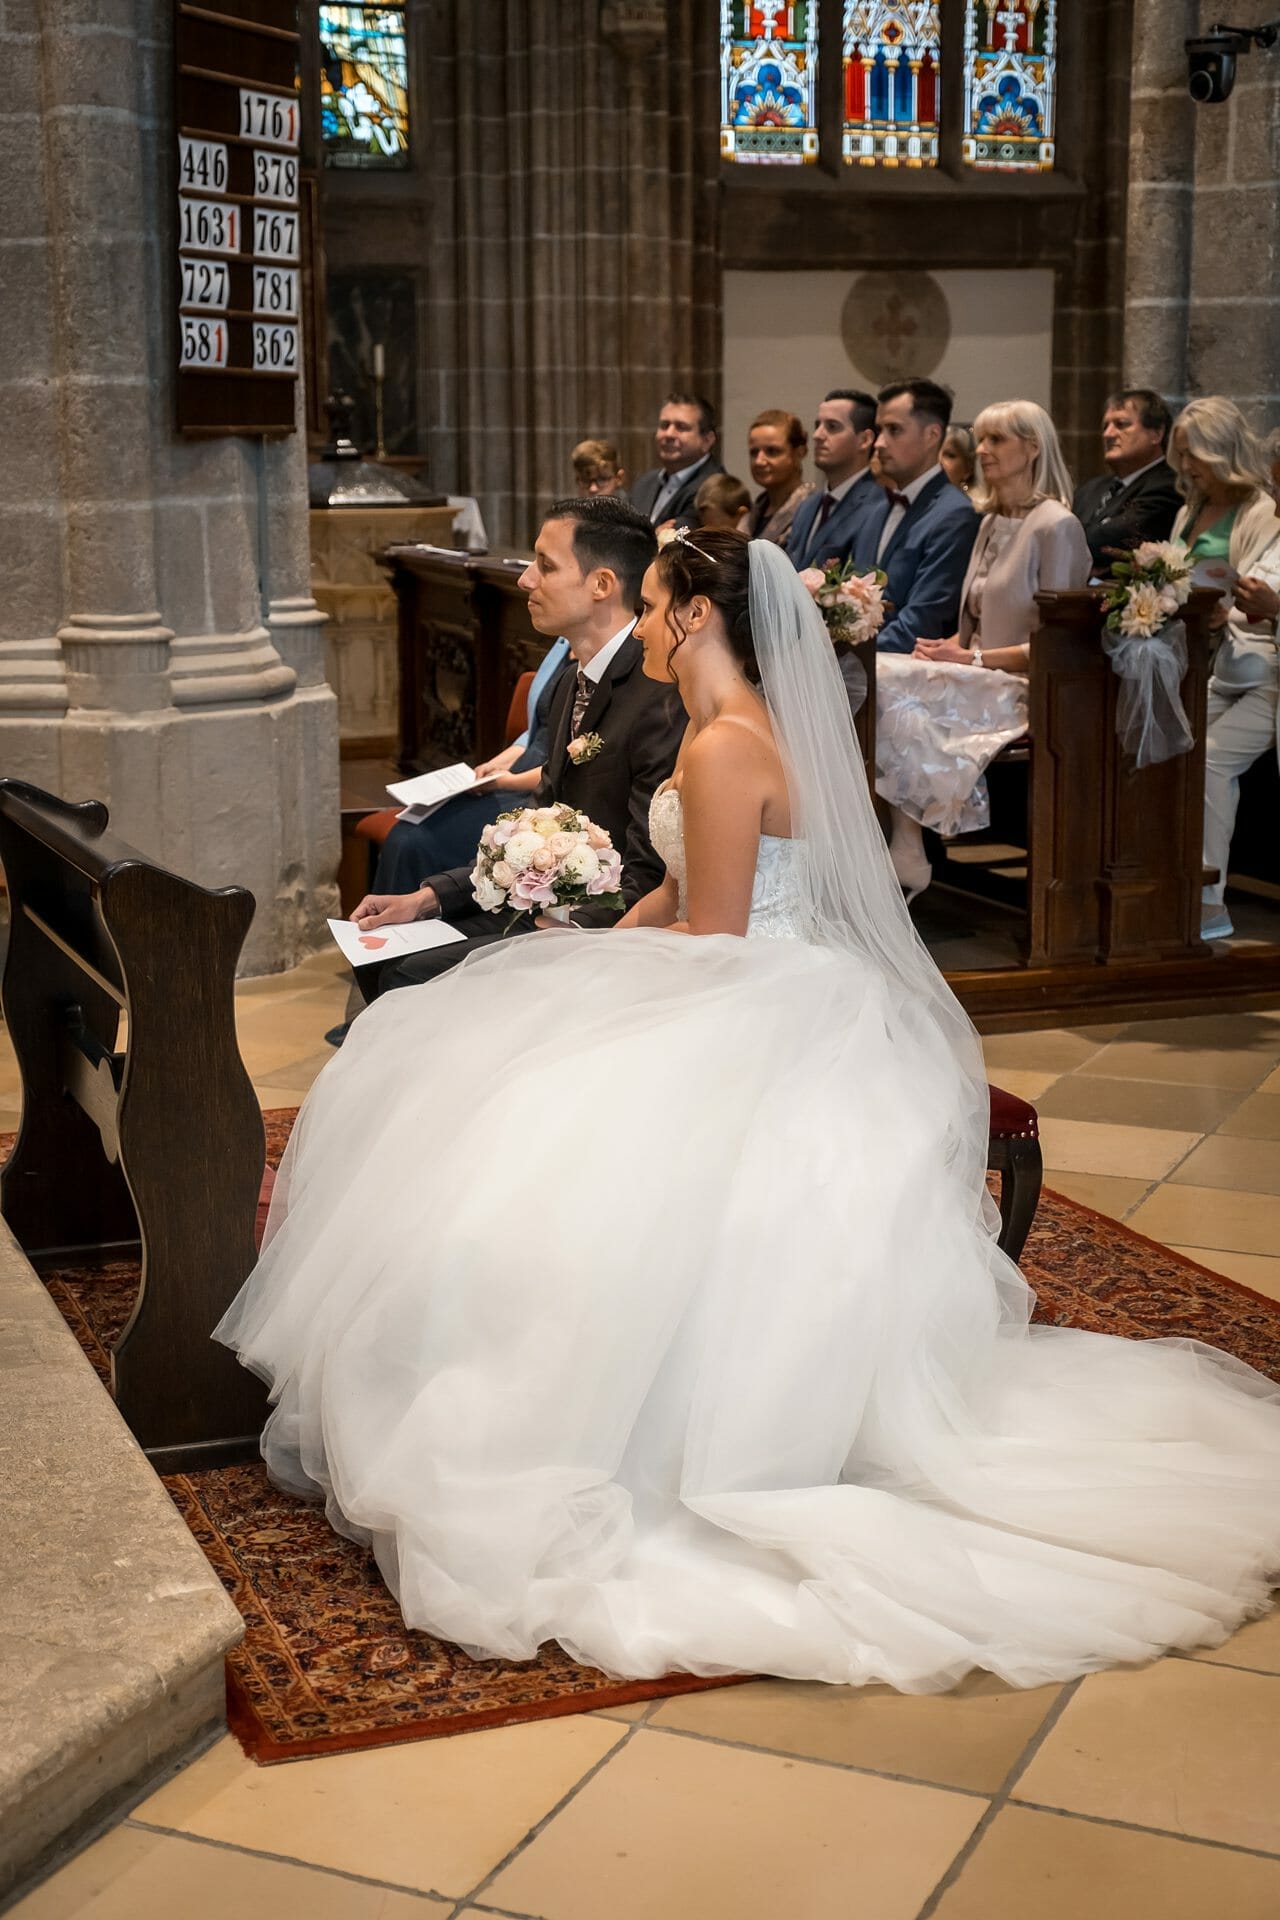 Eine Braut und ein Bräutigam sitzen während ihrer Hochzeitszeremonie in einer Kirche.